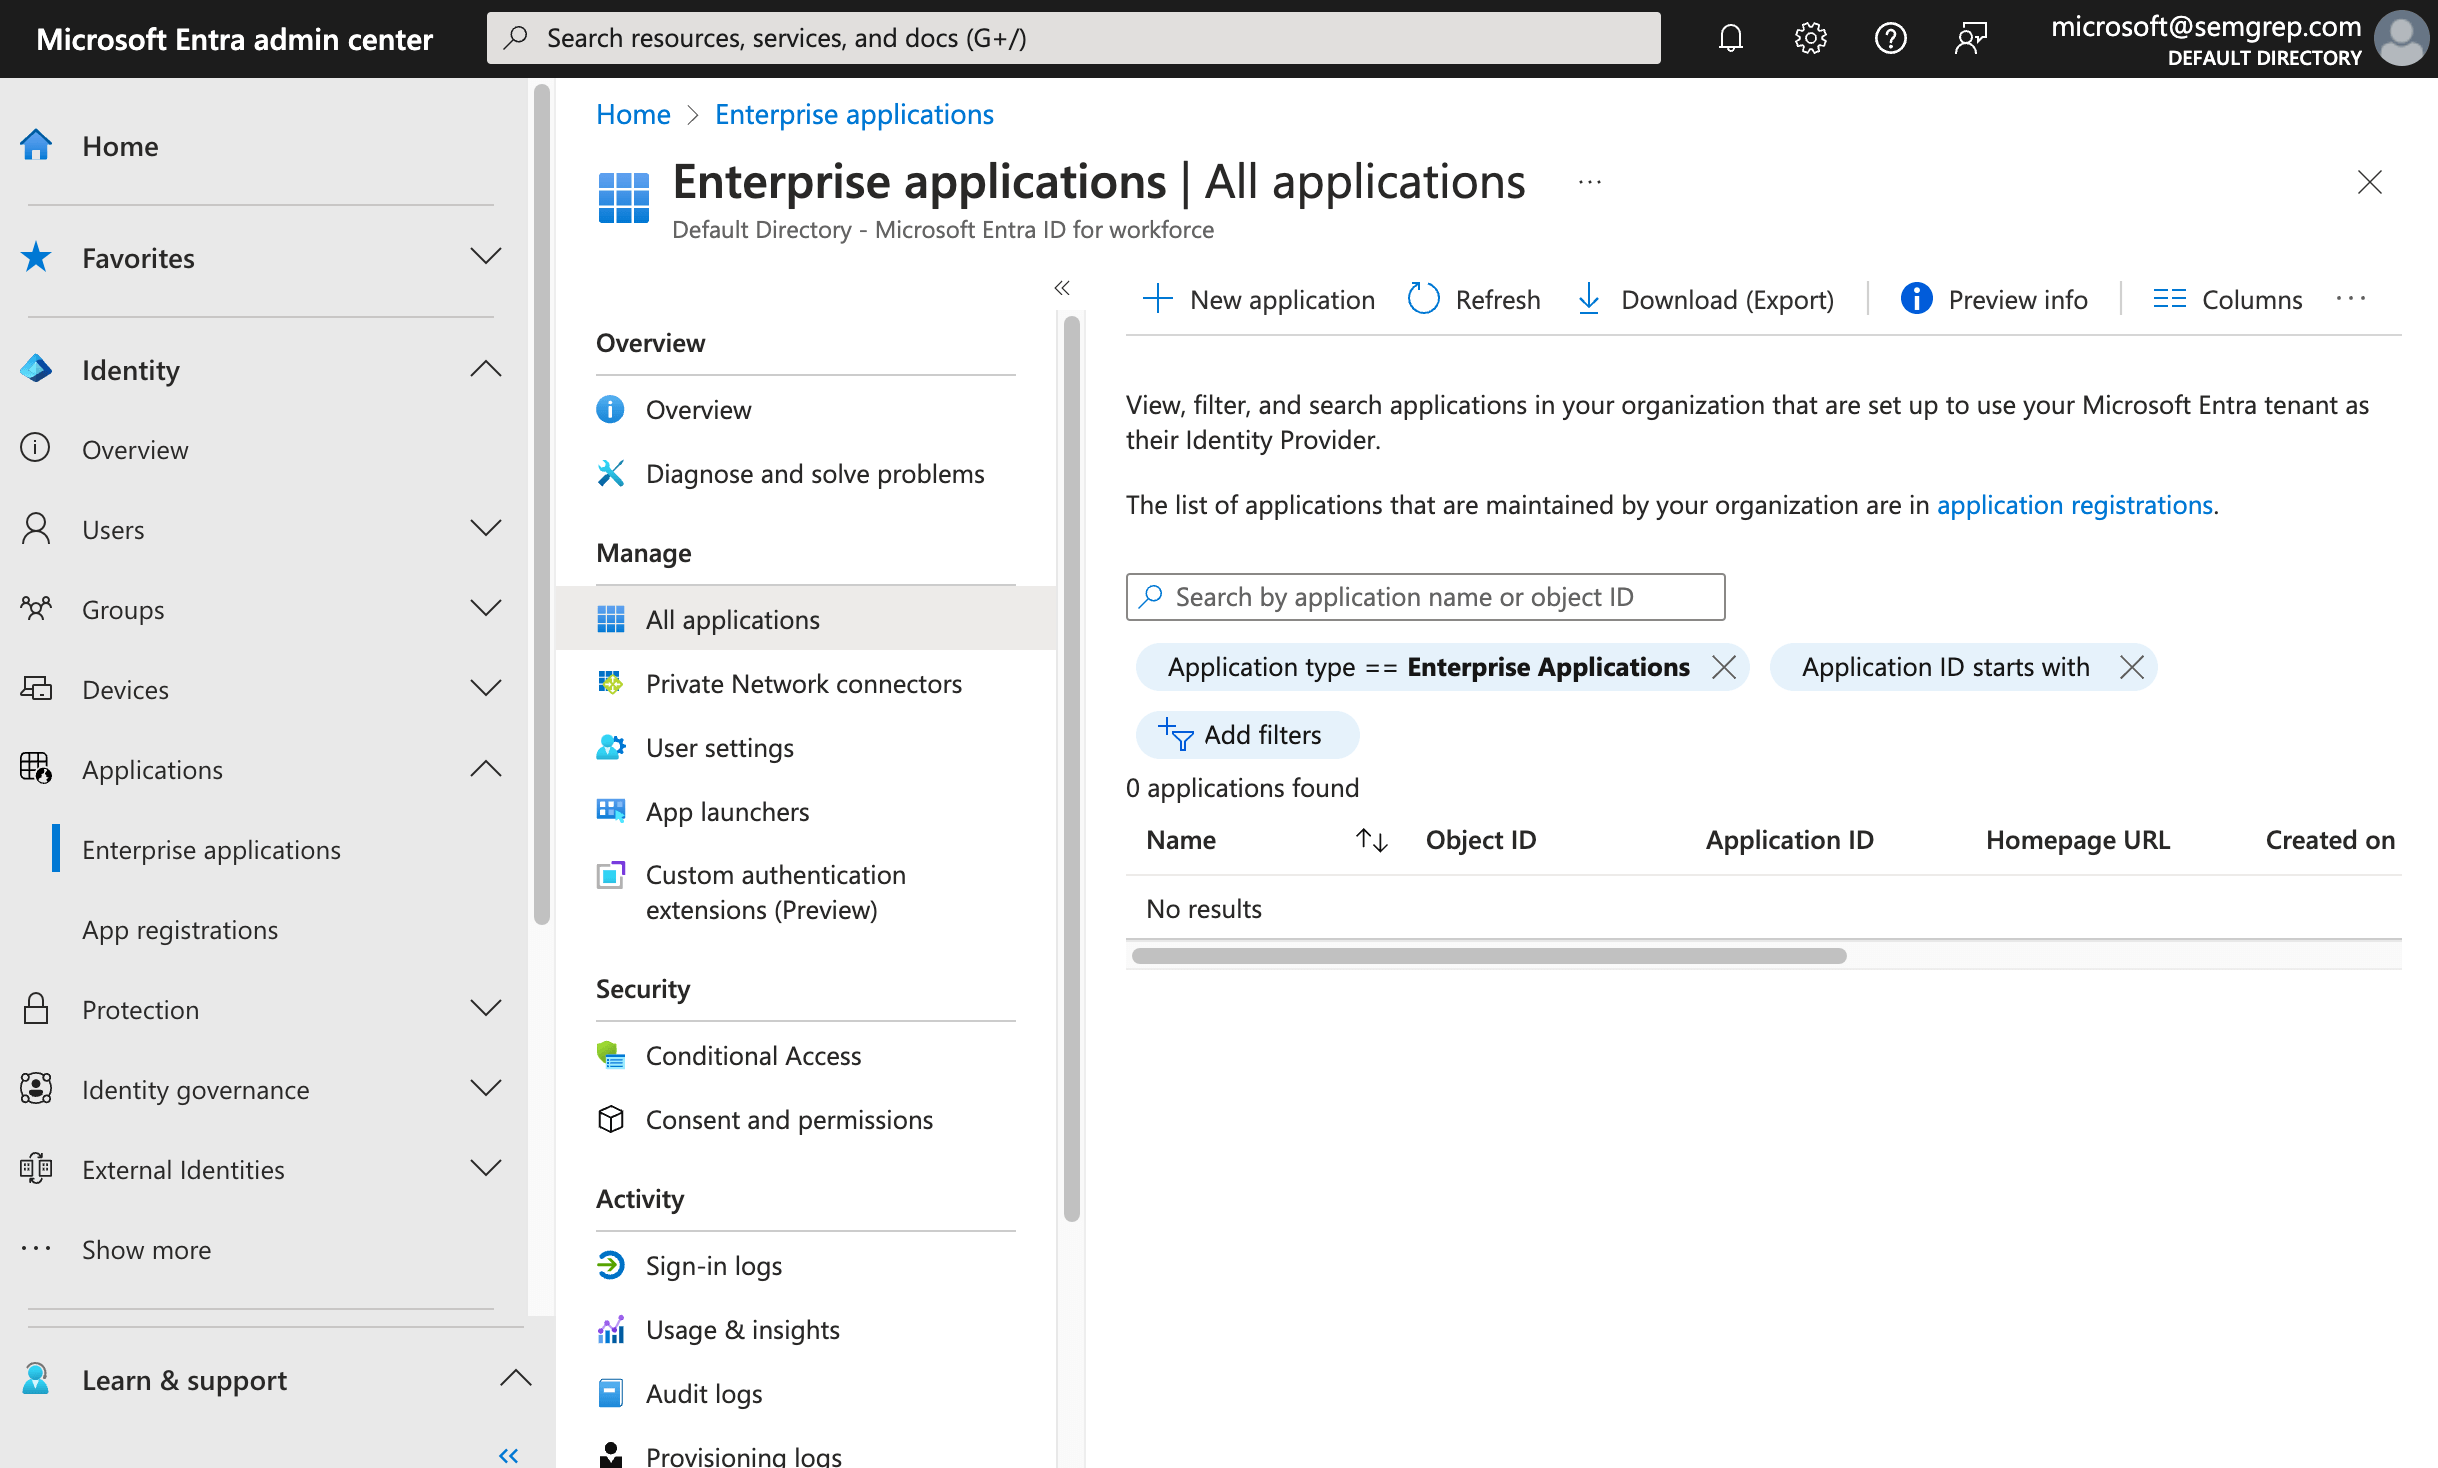 Microsoft Entra admin center&#39;s Enterprise applications screen